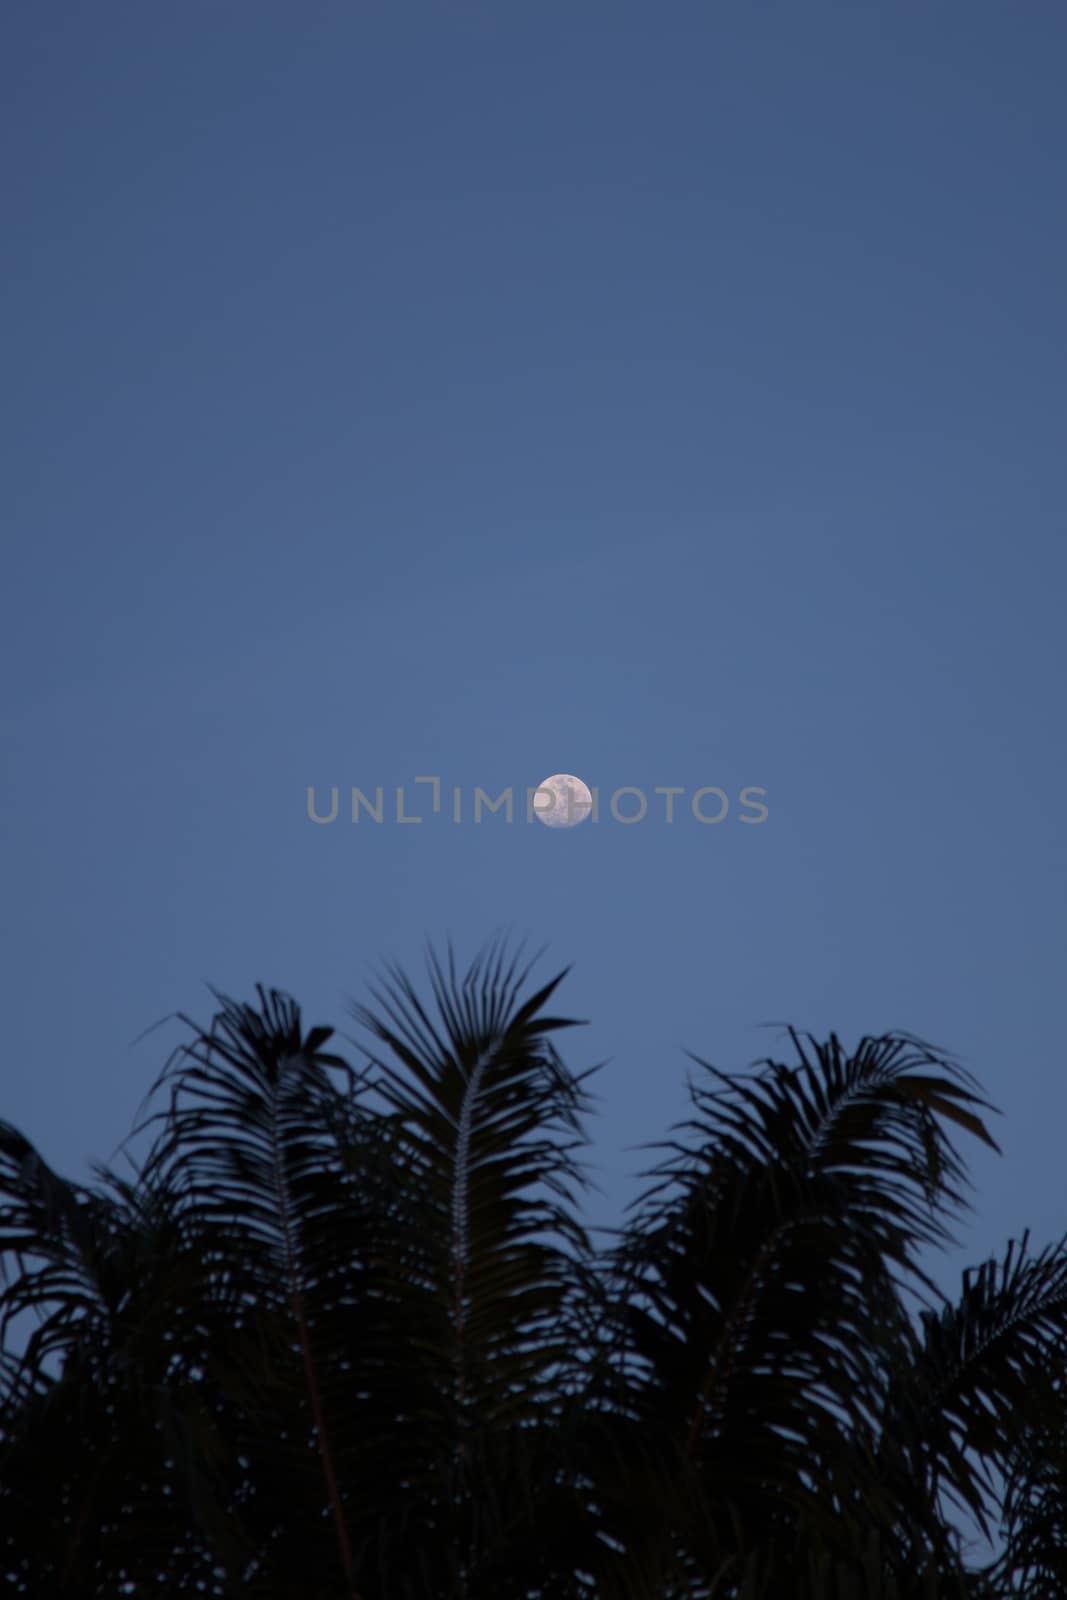 Full Moon above Coconut Tree